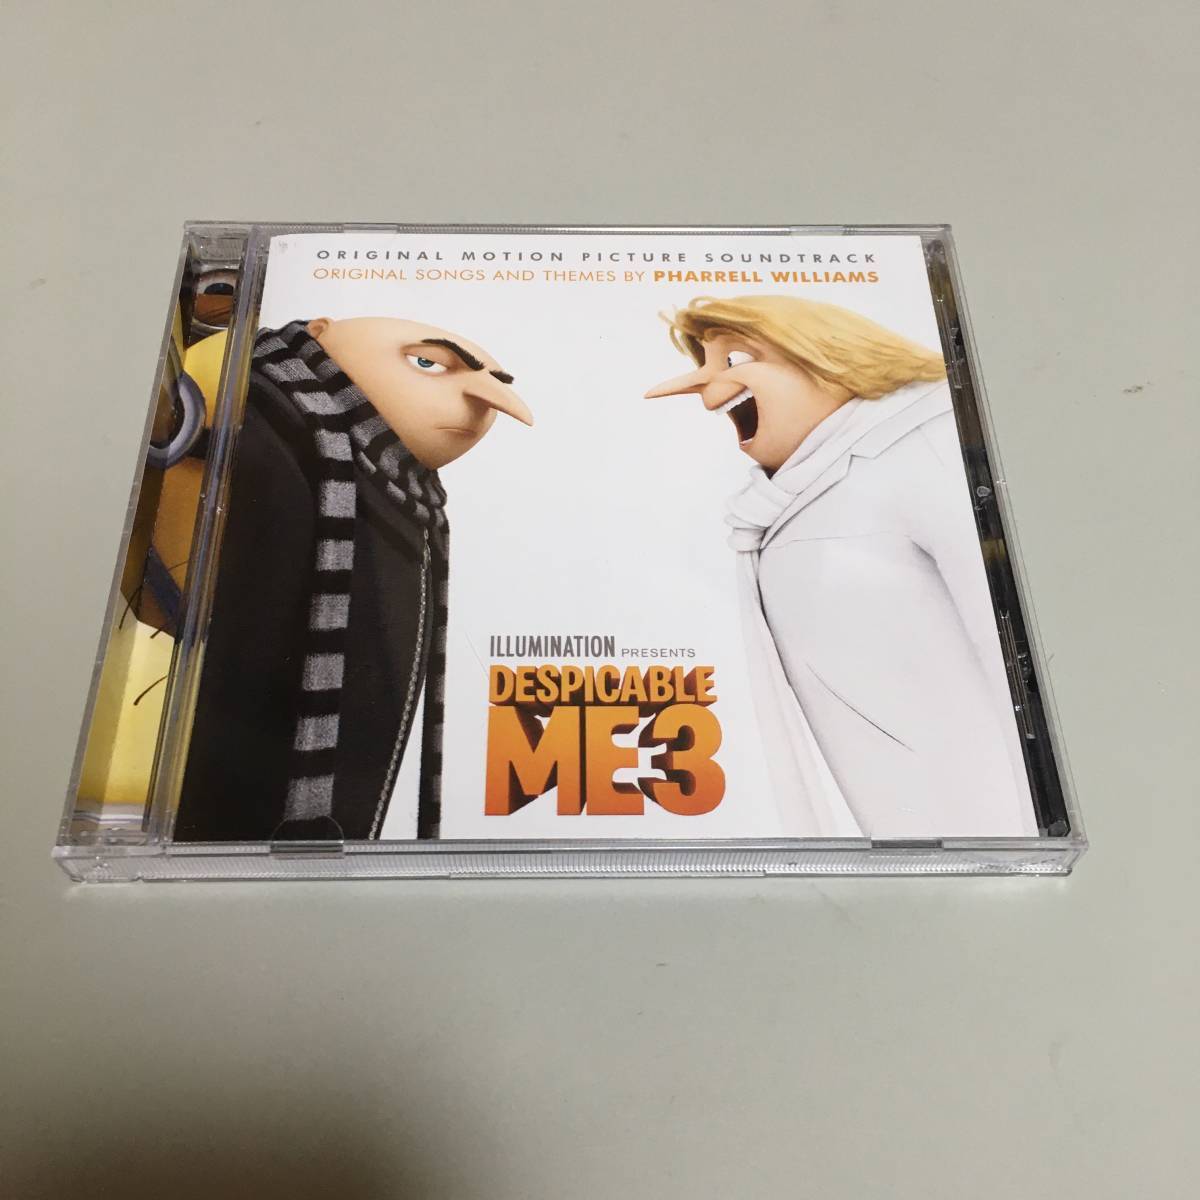 CD Despicable Me3 Original Motion Picture Soundtrack Import Ver 5H